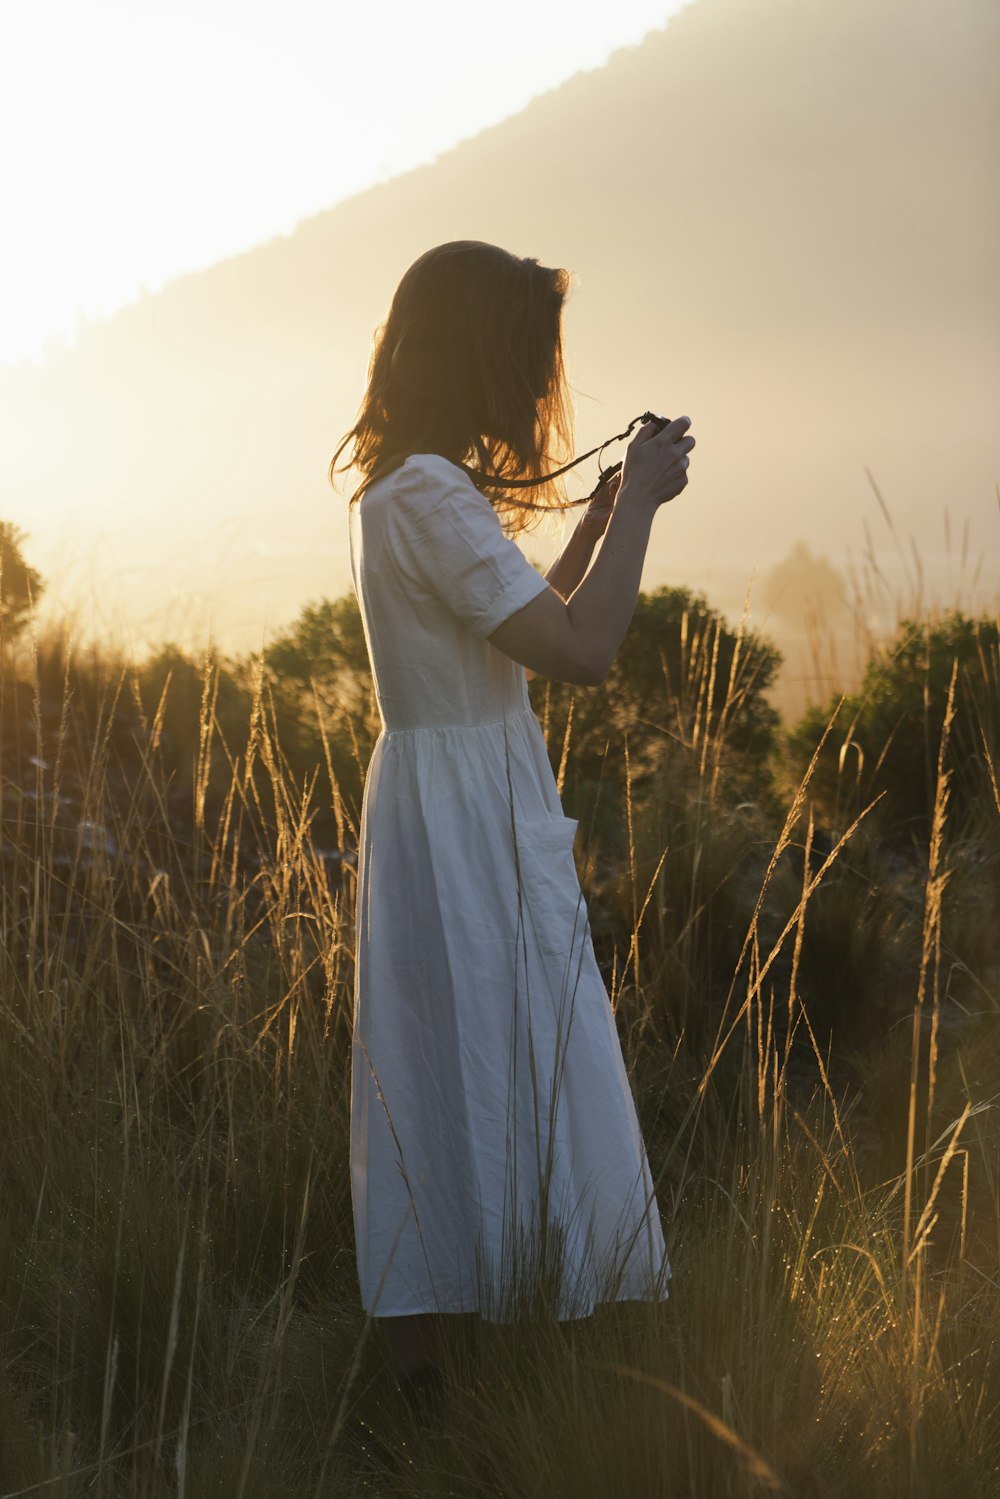 하얀 드레스를 입은 여자가 일몰 동안 푸른 잔디밭에 서서 카메라를 들고 있다